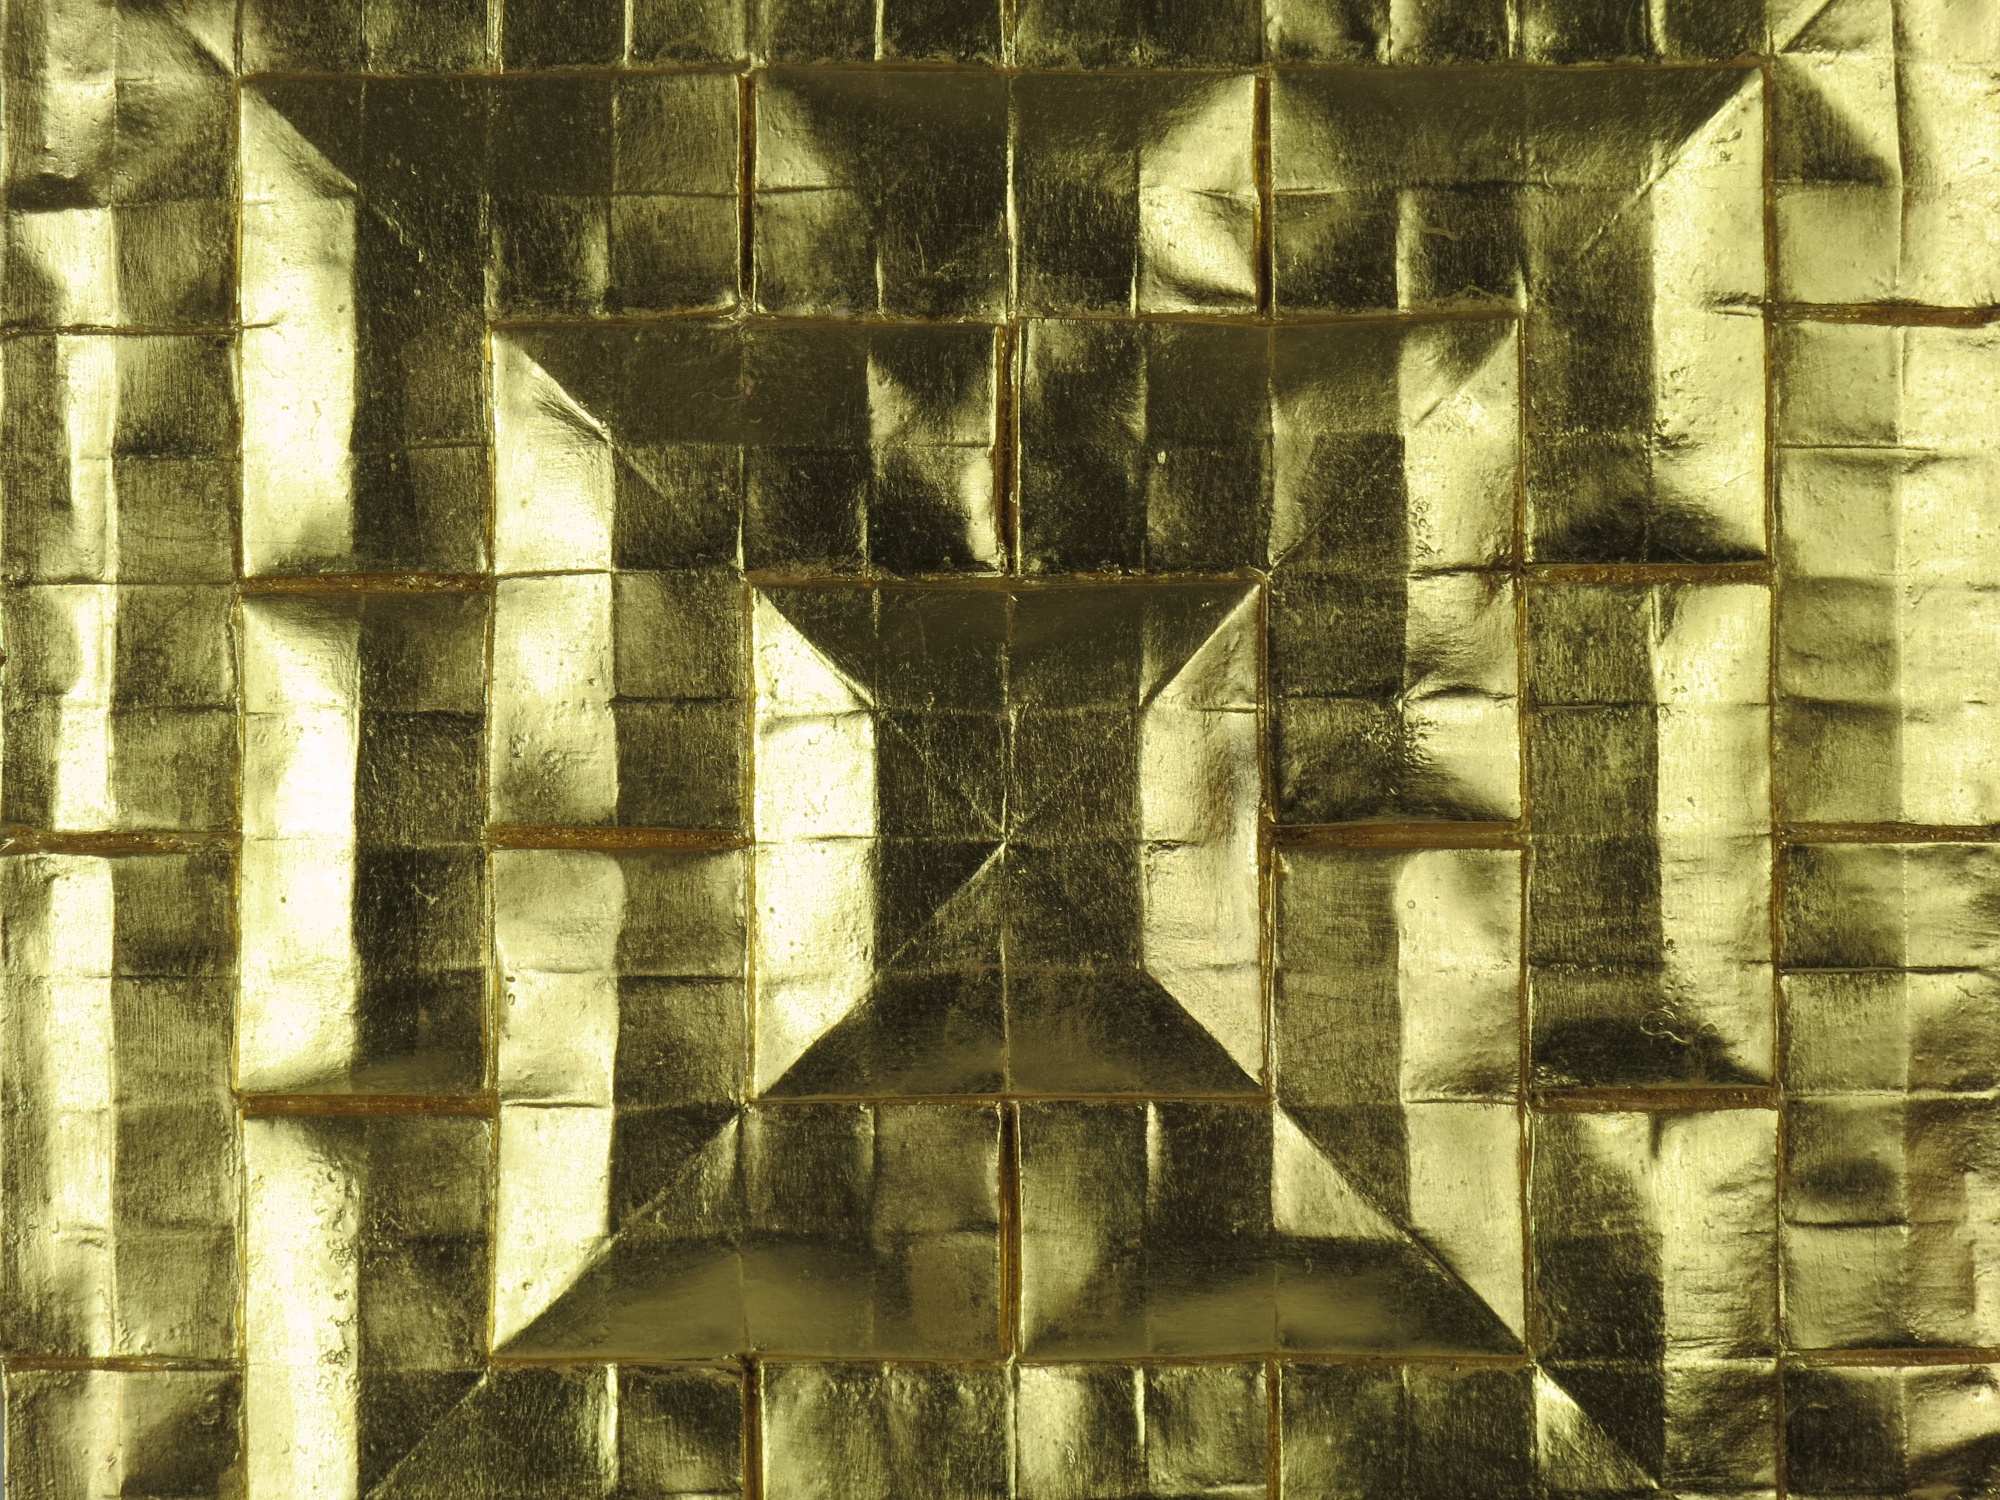 Gilded plaster tile detail.